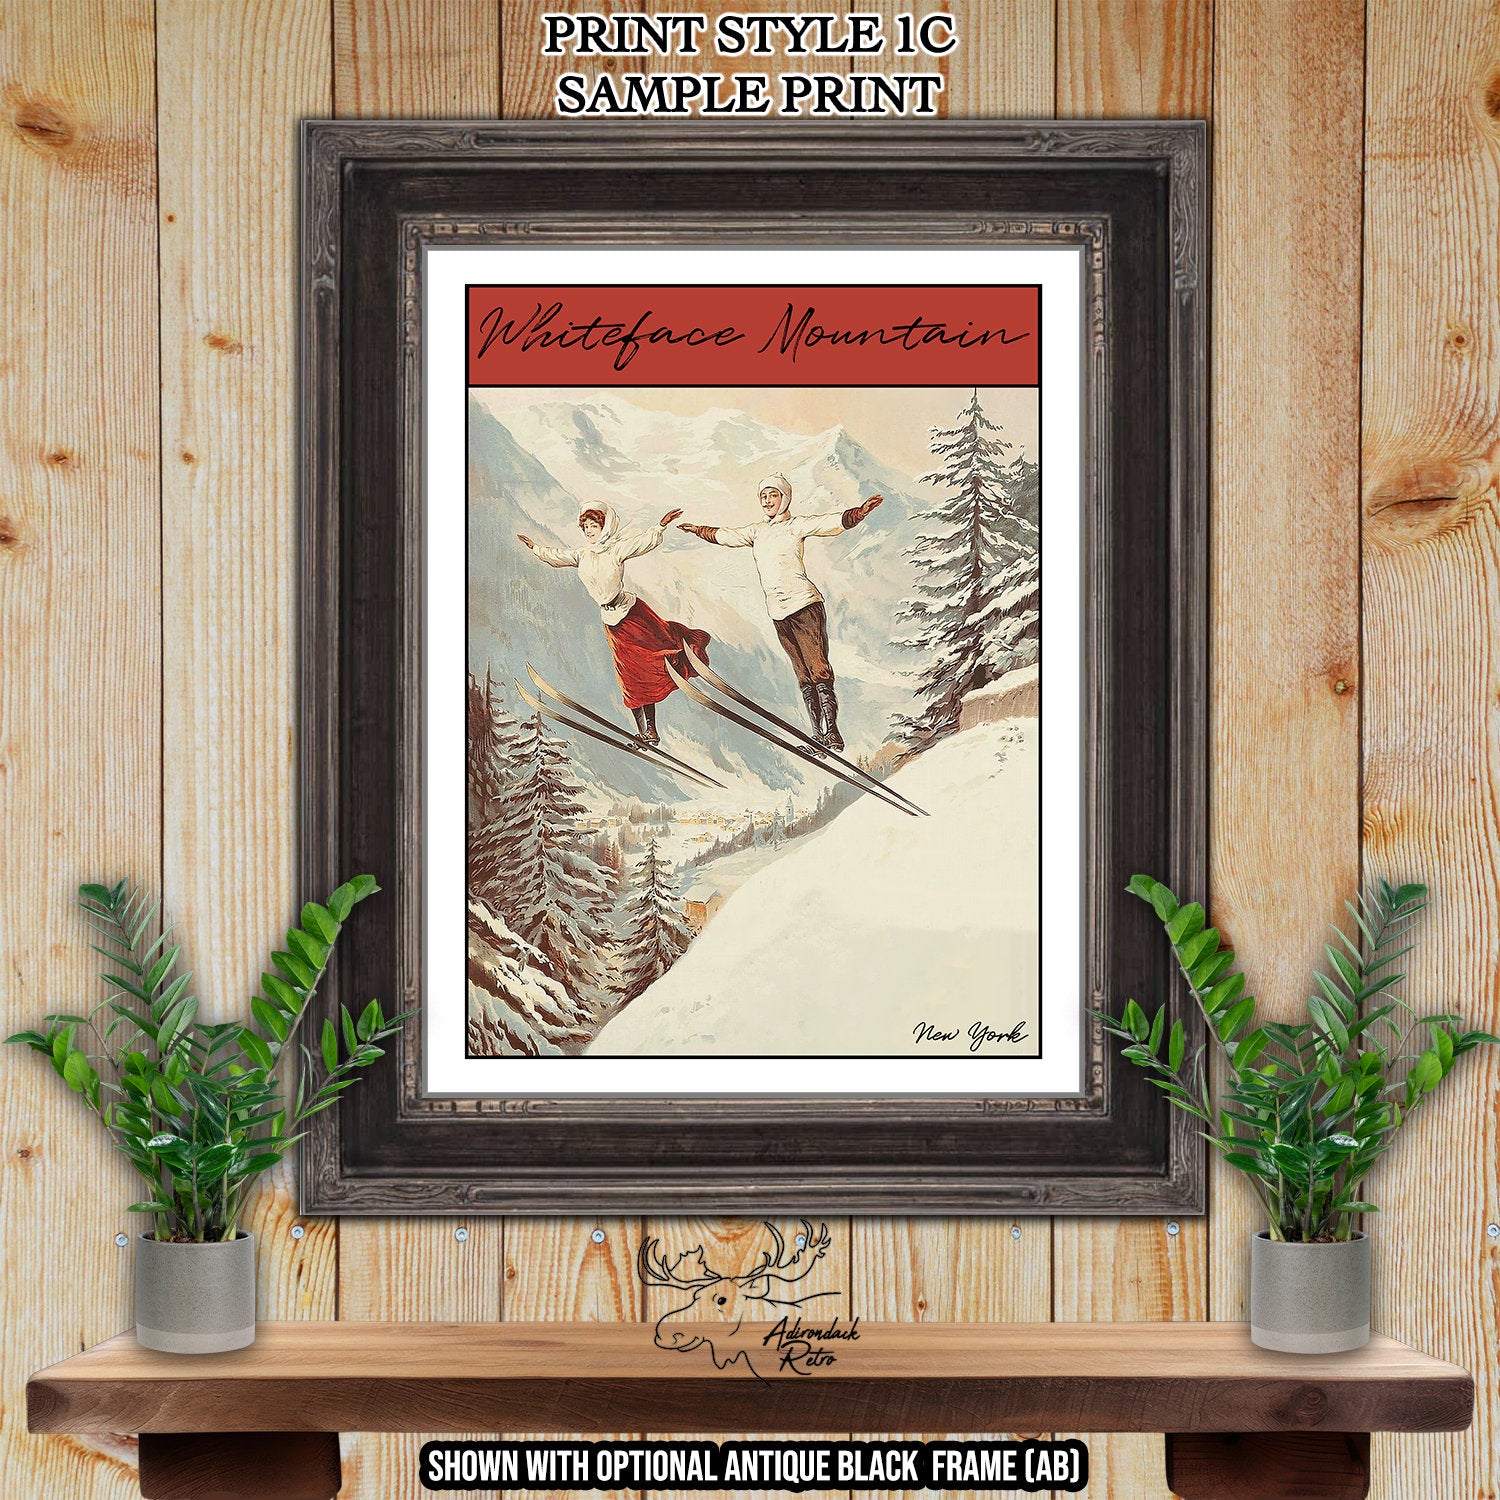 Solitude Mountain Utah Retro Ski Resort Print